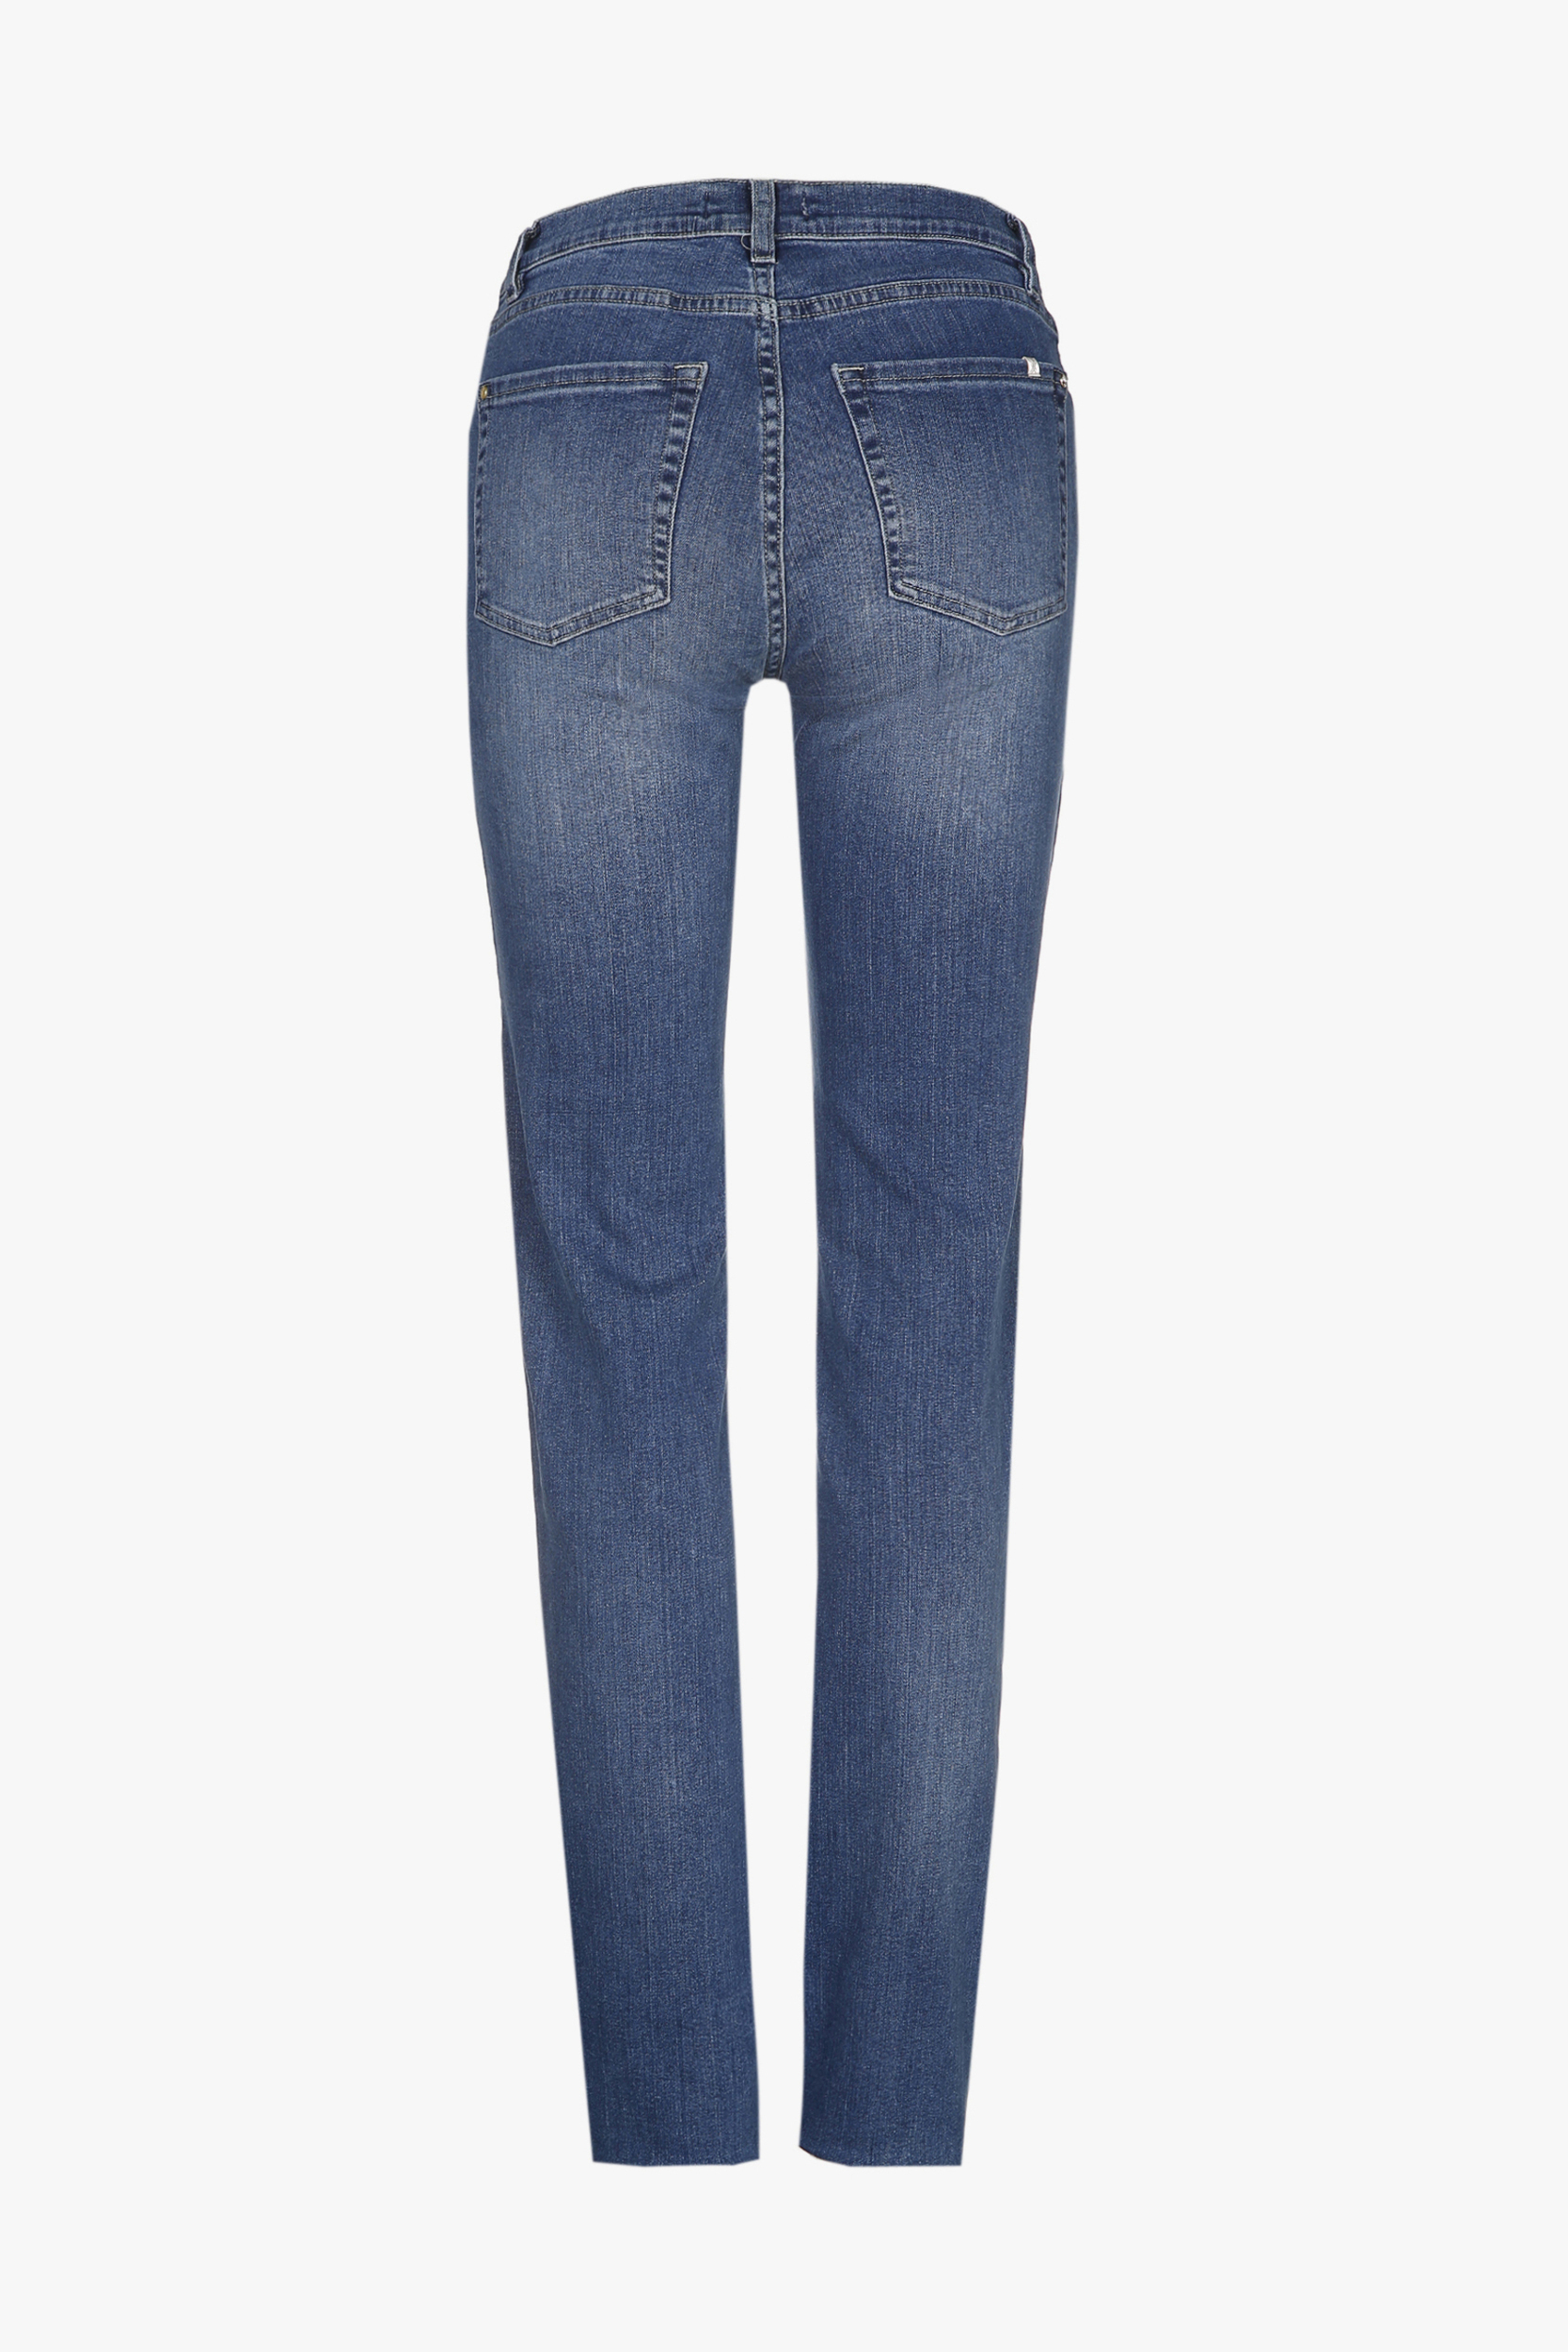 Van rand Staan voor Blauwe slim fit jeans broek - Xandres